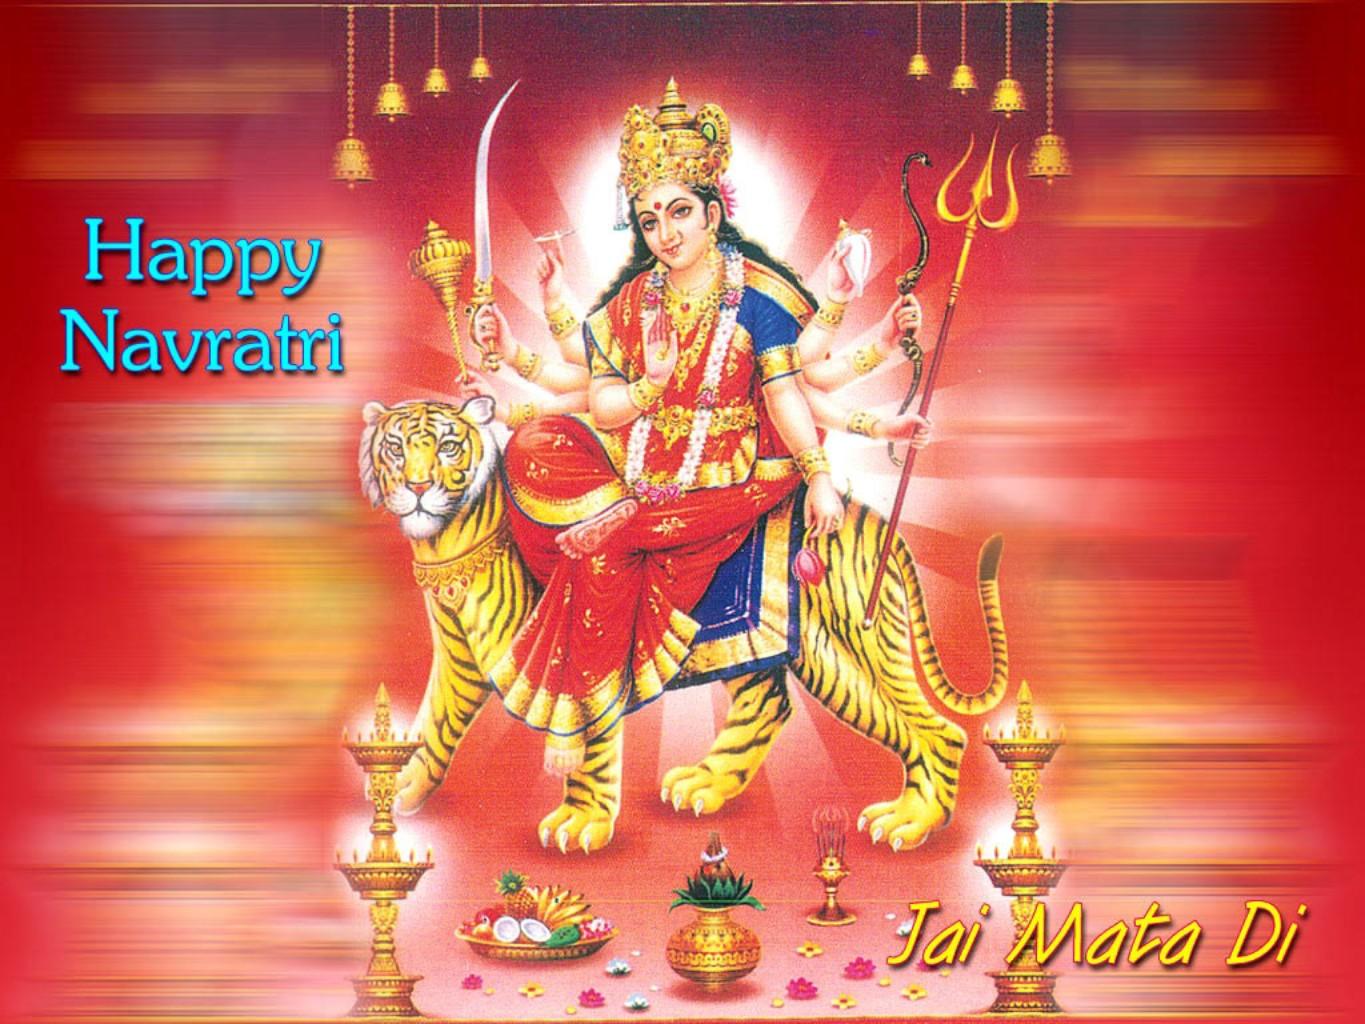 Chaitra Navratri Image HD. Maa Durga Navratri Wallpaper